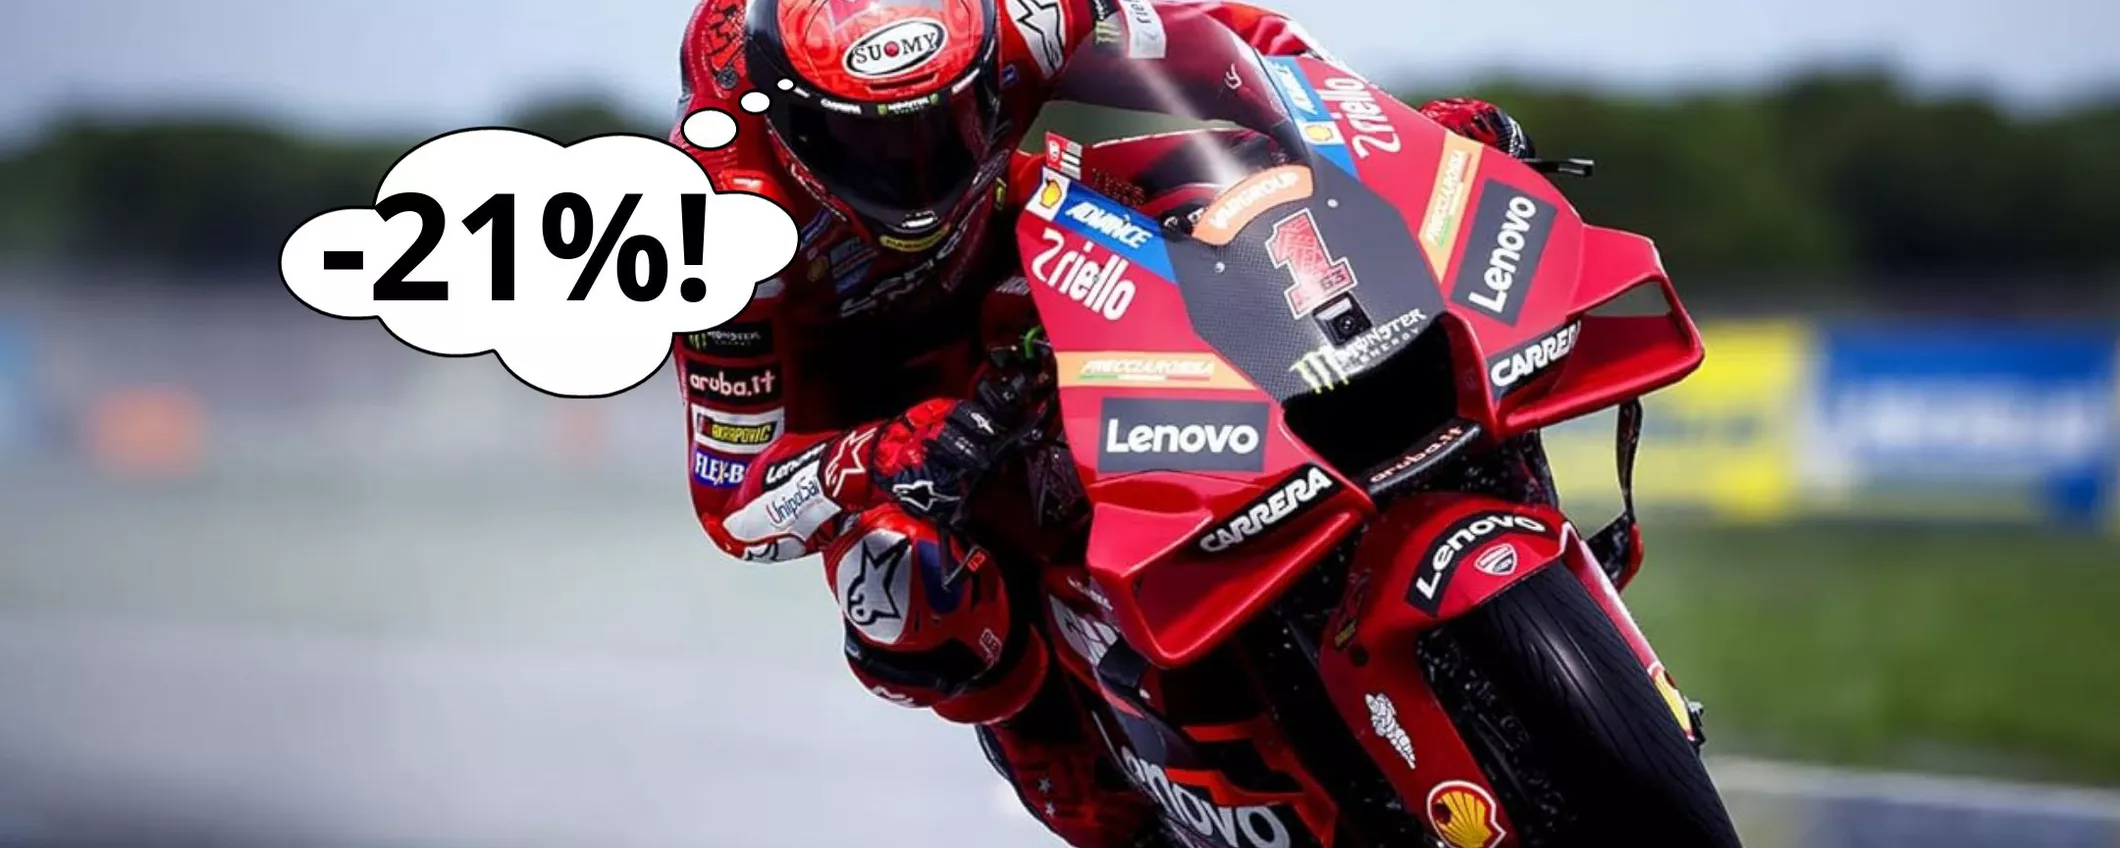 Vivi le emozioni della MotoGP 23 su PS5: corri e approfitta dell'OFFERTA!